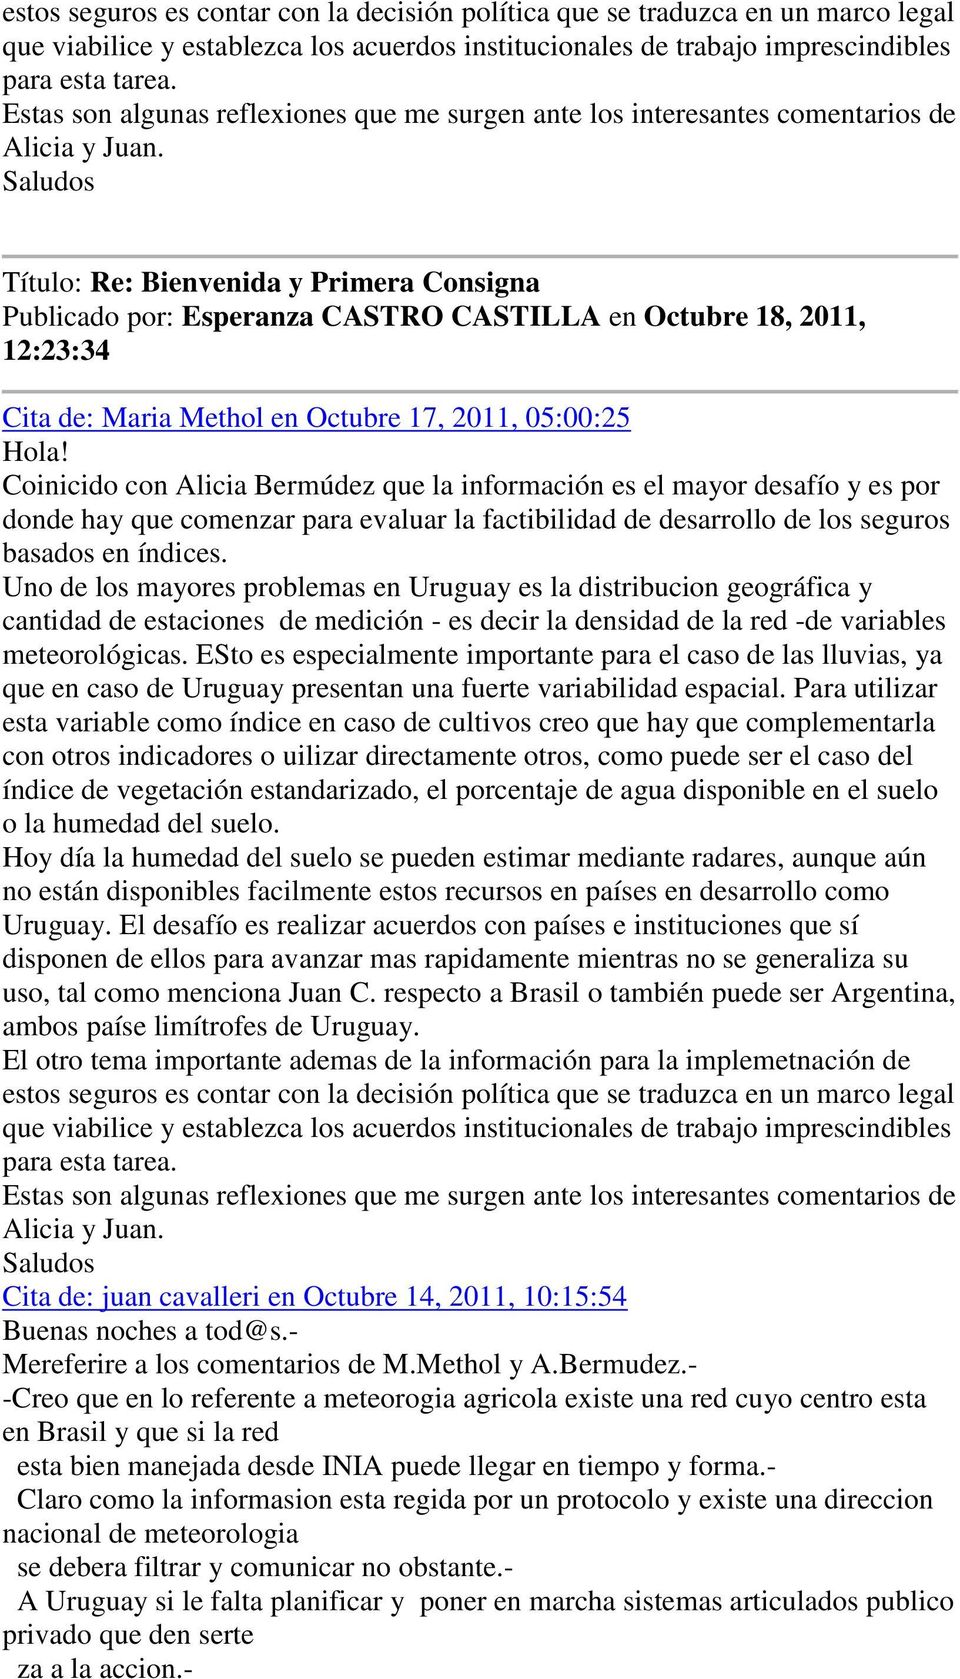 Saludos Publicado por: Esperanza CASTRO CASTILLA en Octubre 18, 2011, 12:23:34 Cita de: Maria Methol en Octubre 17, 2011, 05:00:25 Hola!